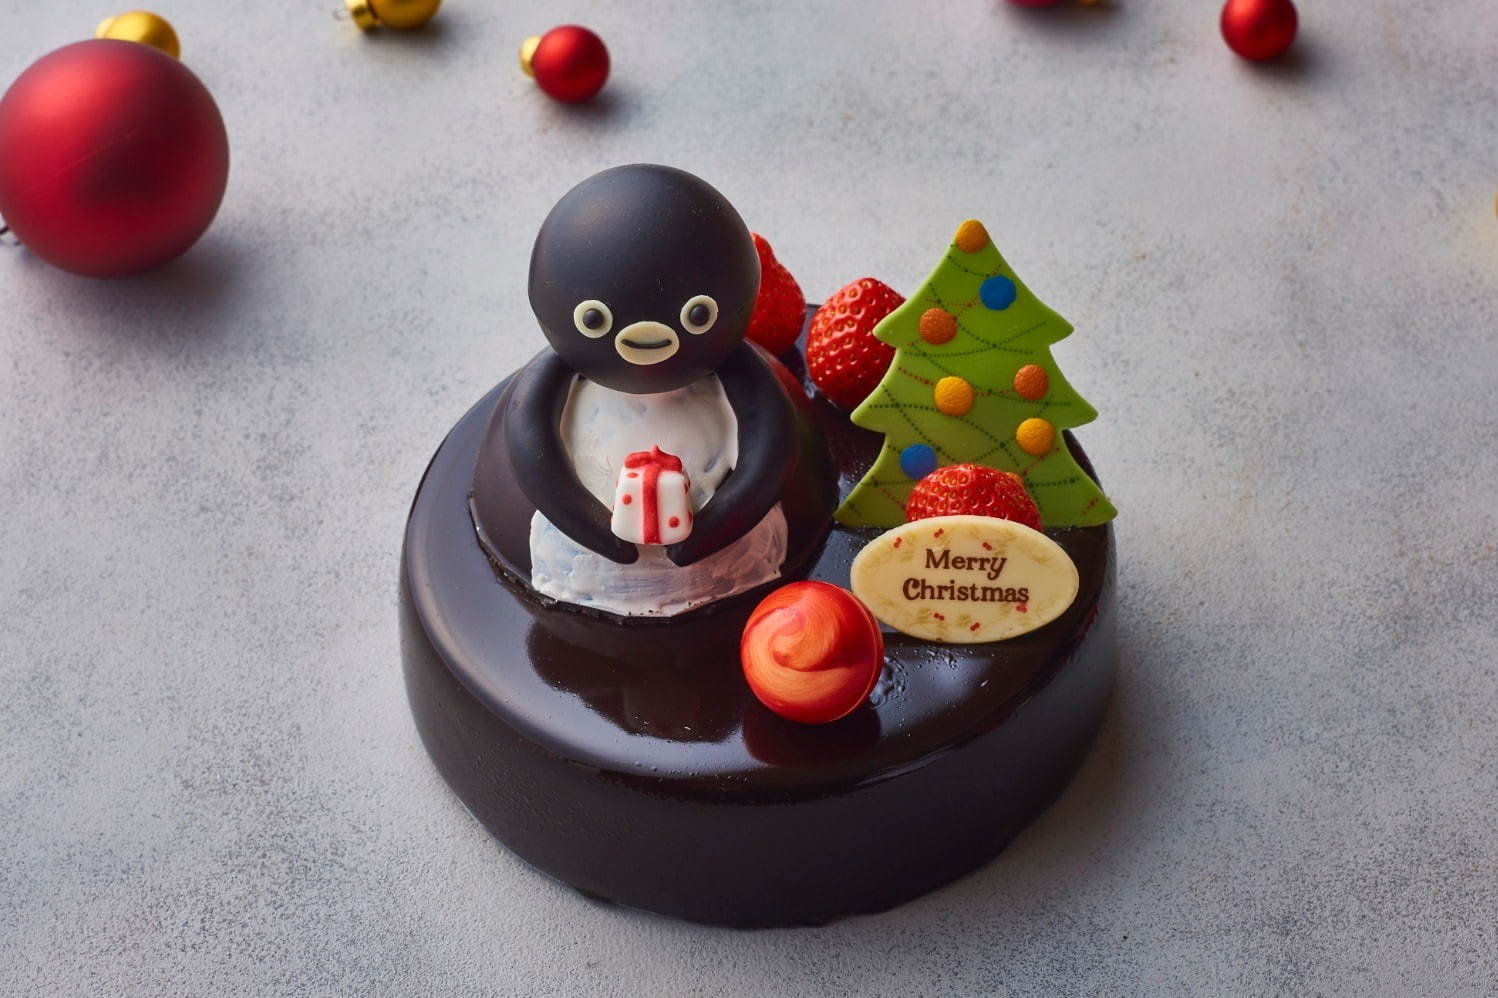 Suicaのペンギン クリスマスケーキ 5,800円/早期予約・会員 5,220円 直径15cm(5号サイズ)